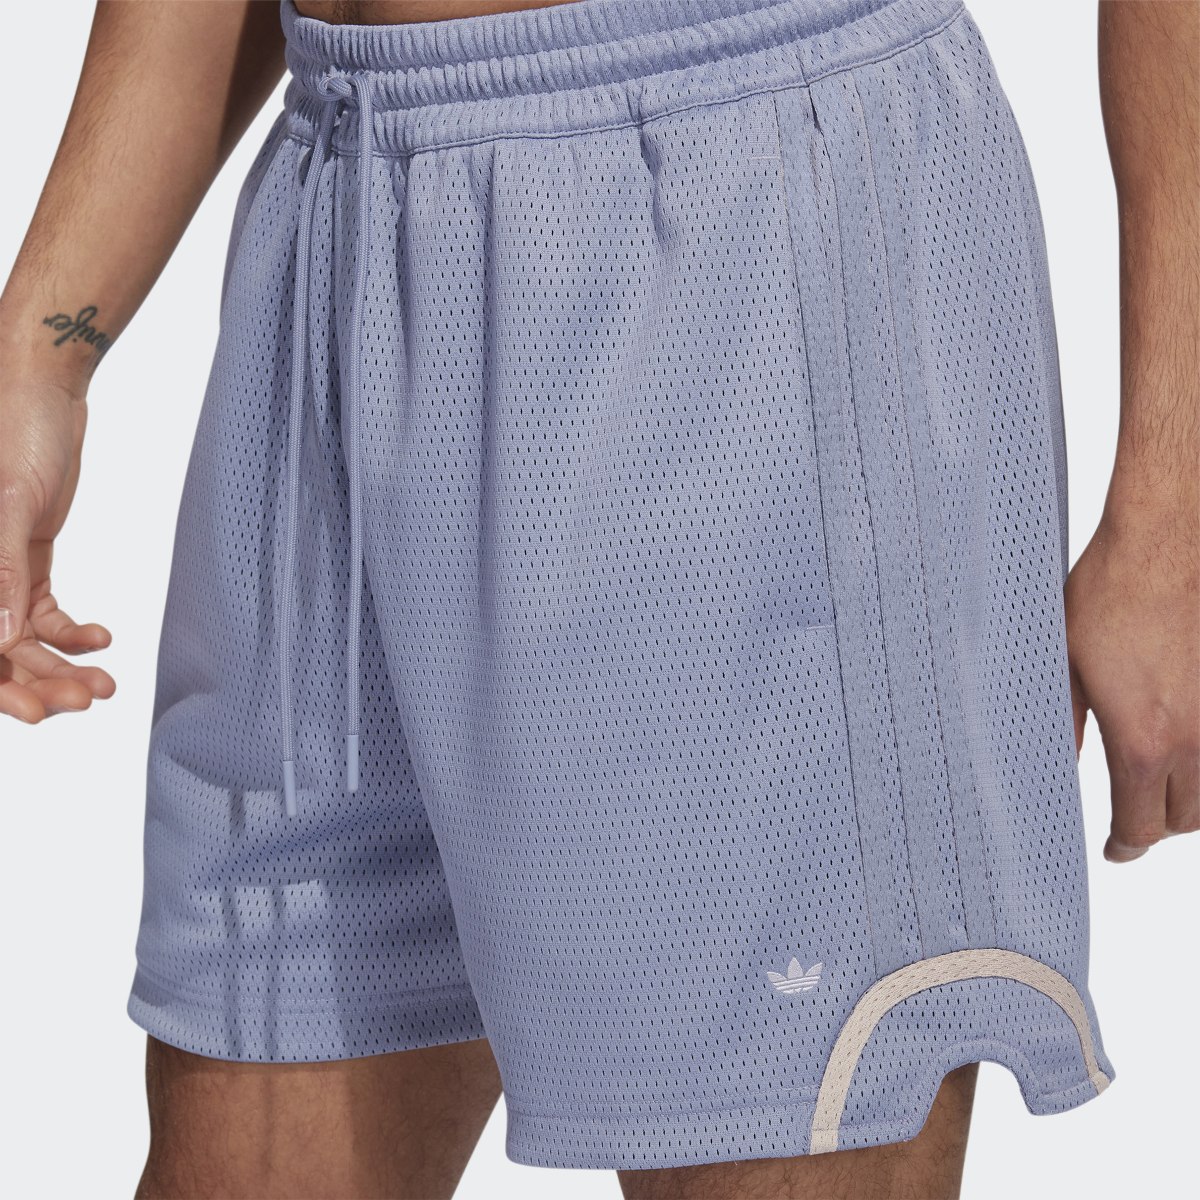 Adidas Basketball Mesh Shorts. 5